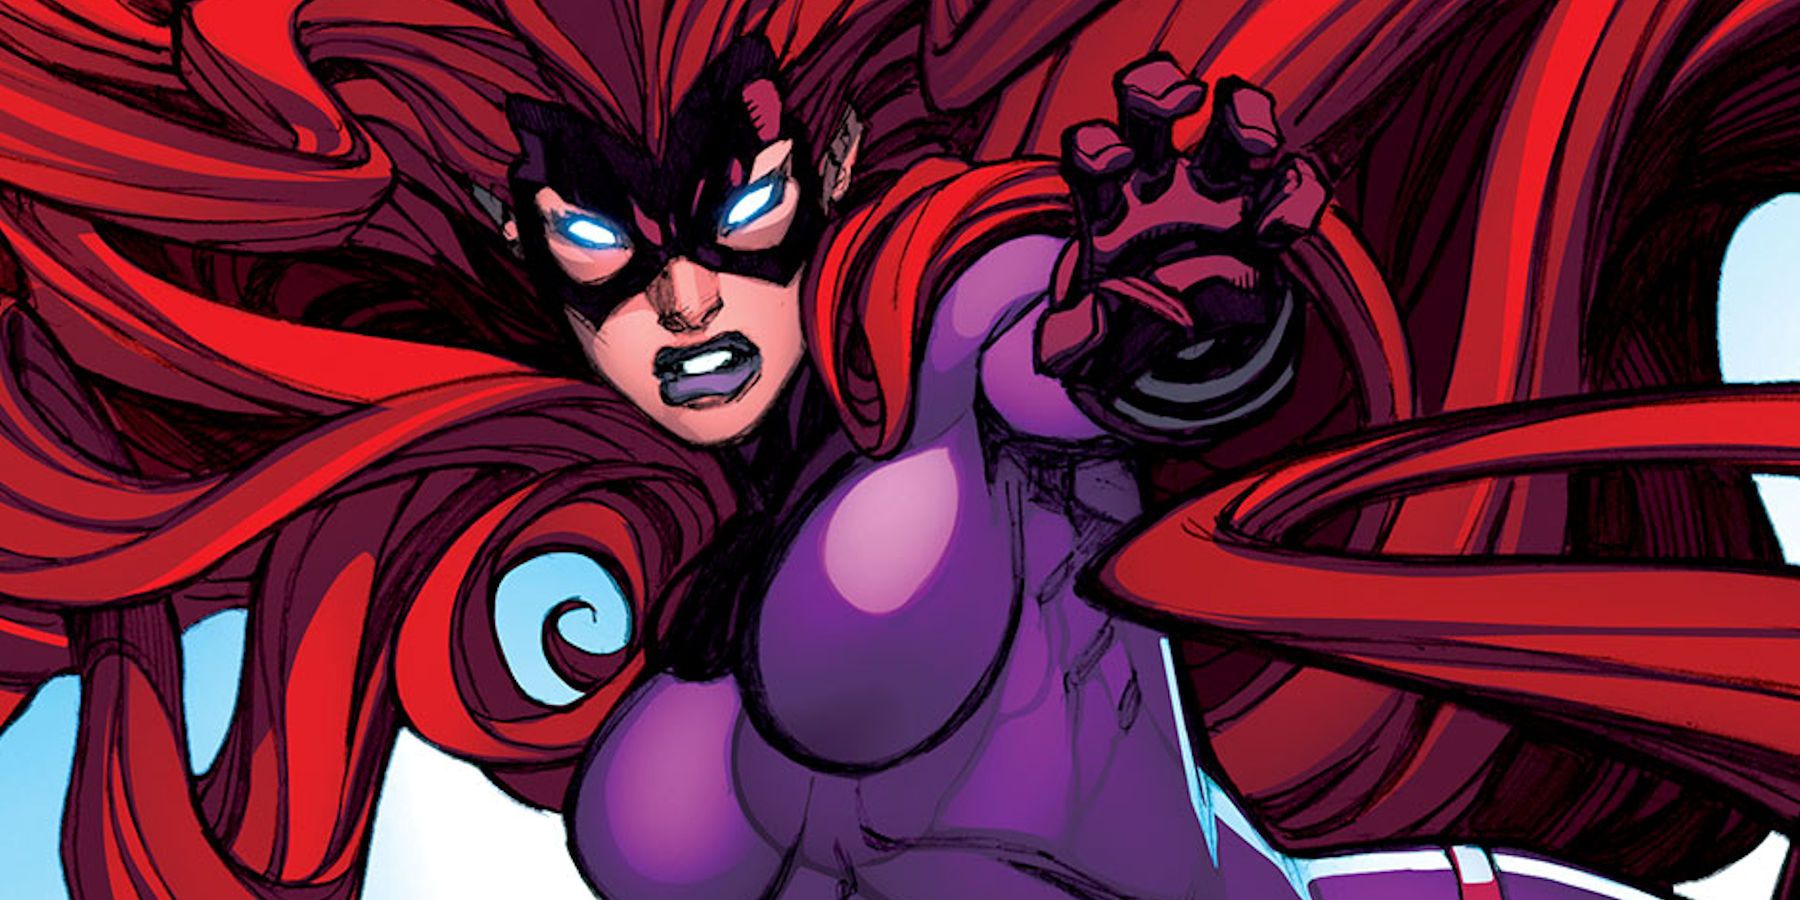 The Inhumans Medusa attacks in Marvel Comics.